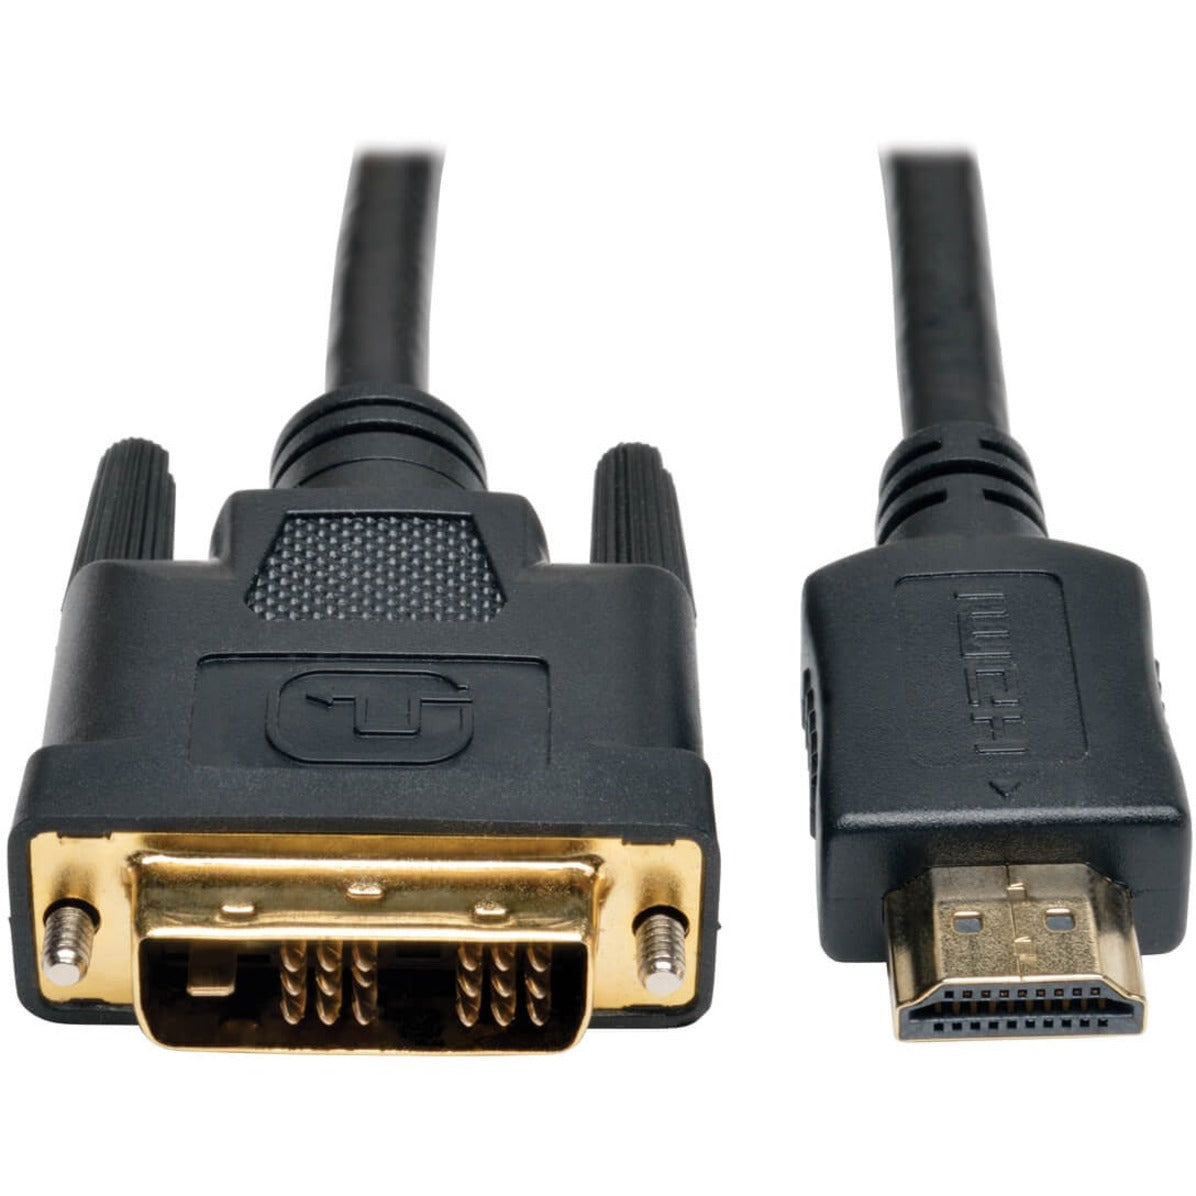 Tripp Lite P566-020 HDMI to DVI Cavo 20-ft Protezione EMI/RF Connettori Placcati in Oro